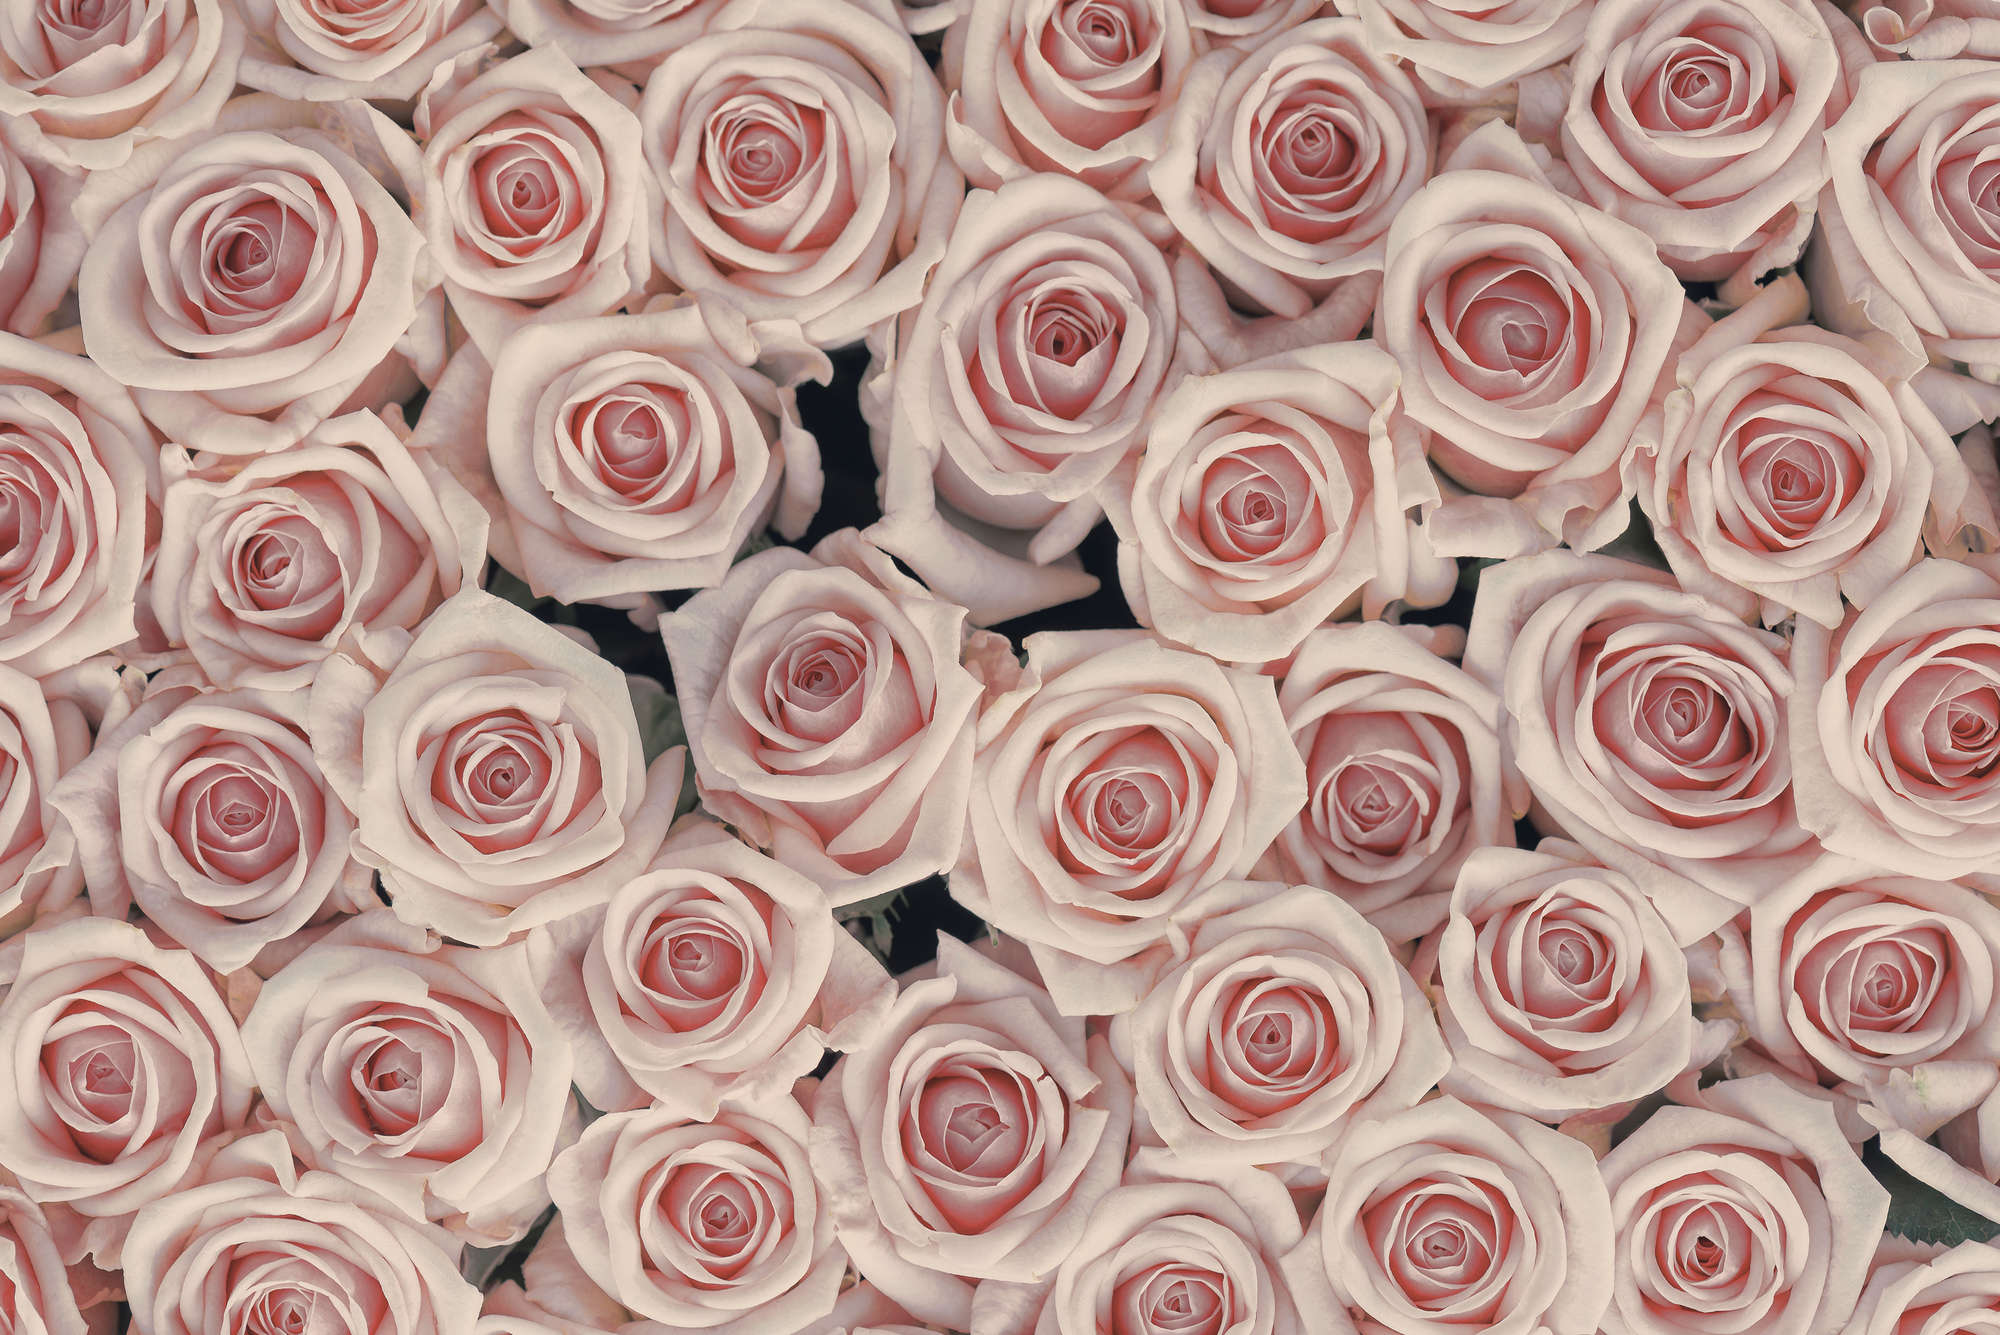             Papier peint végétal roses et blanches sur intissé lisse nacré
        